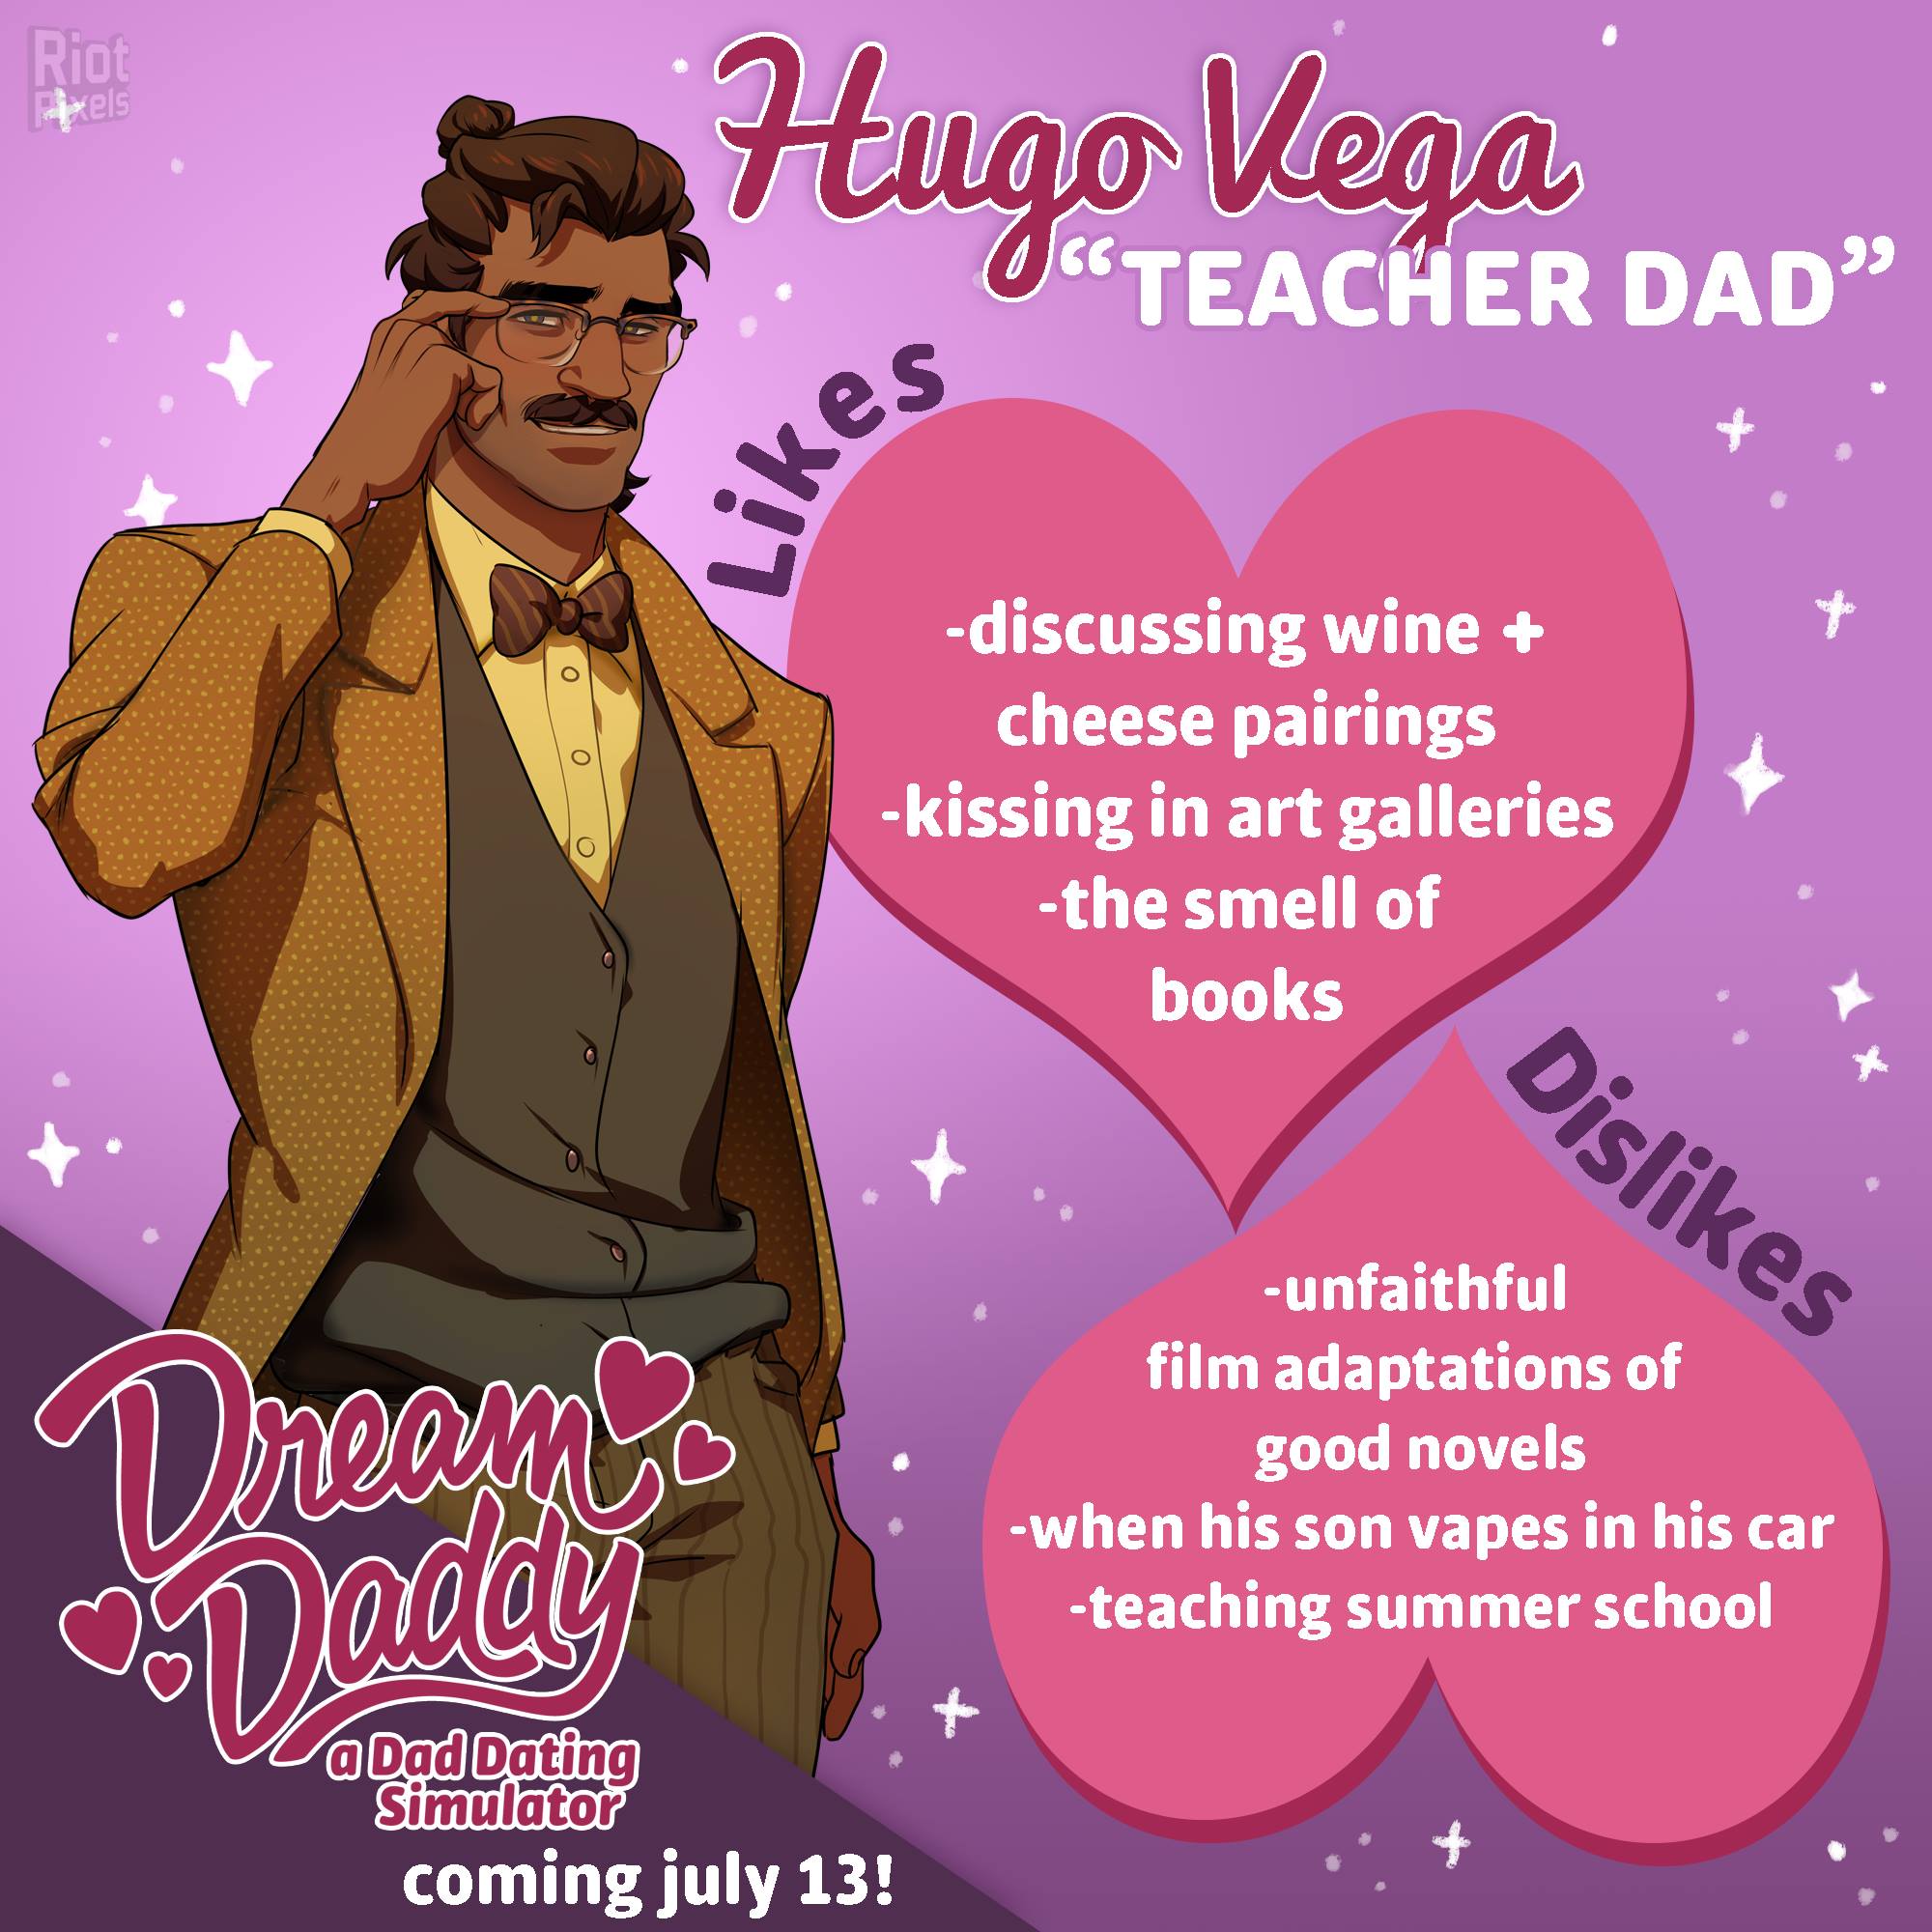 Dream daddy: a dad dating simulator